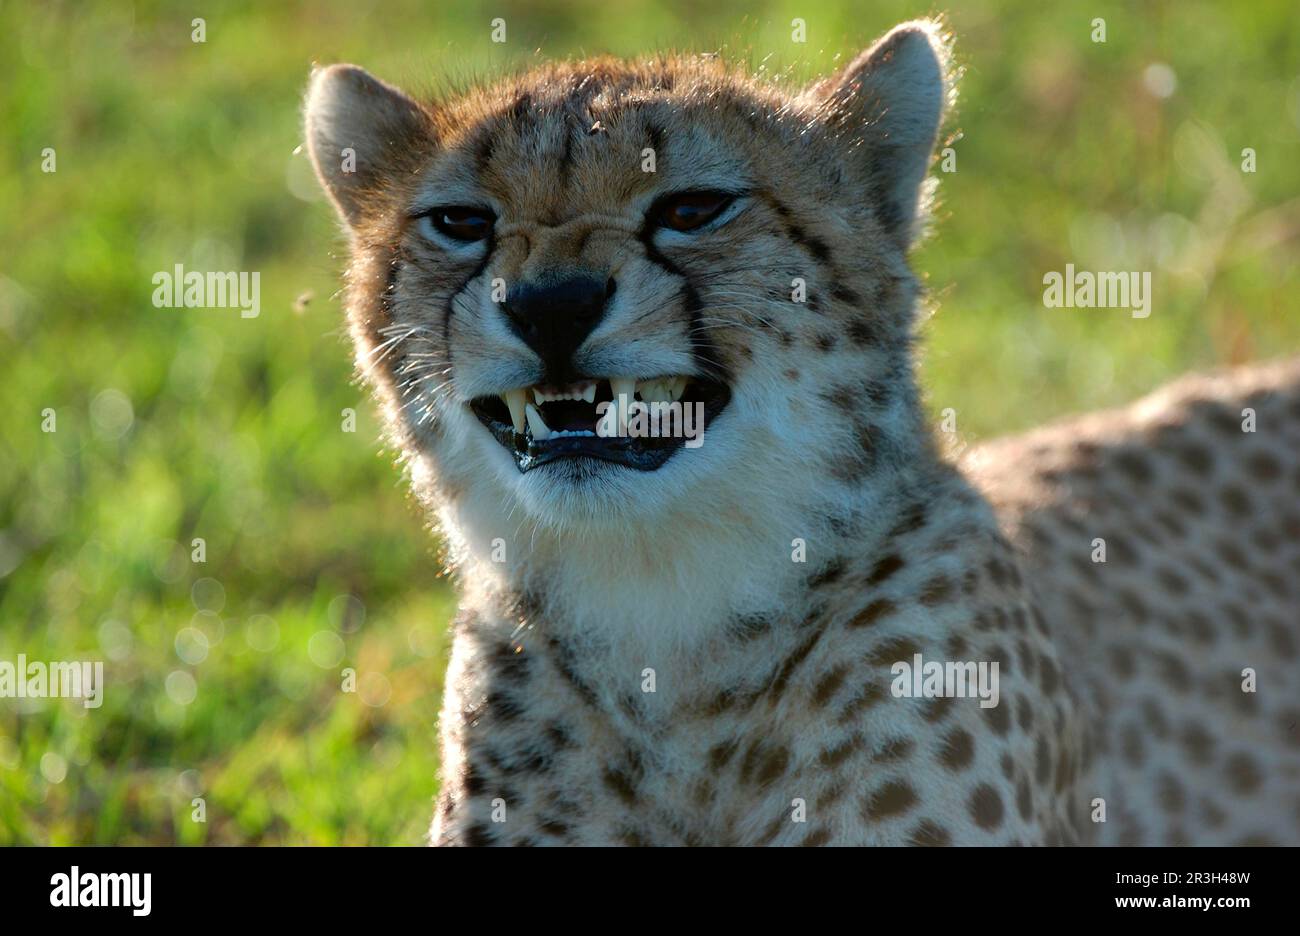 Cheetah (Acinonyx jubatus) close-up of head, growling, Masai Mara, Kenya Stock Photo